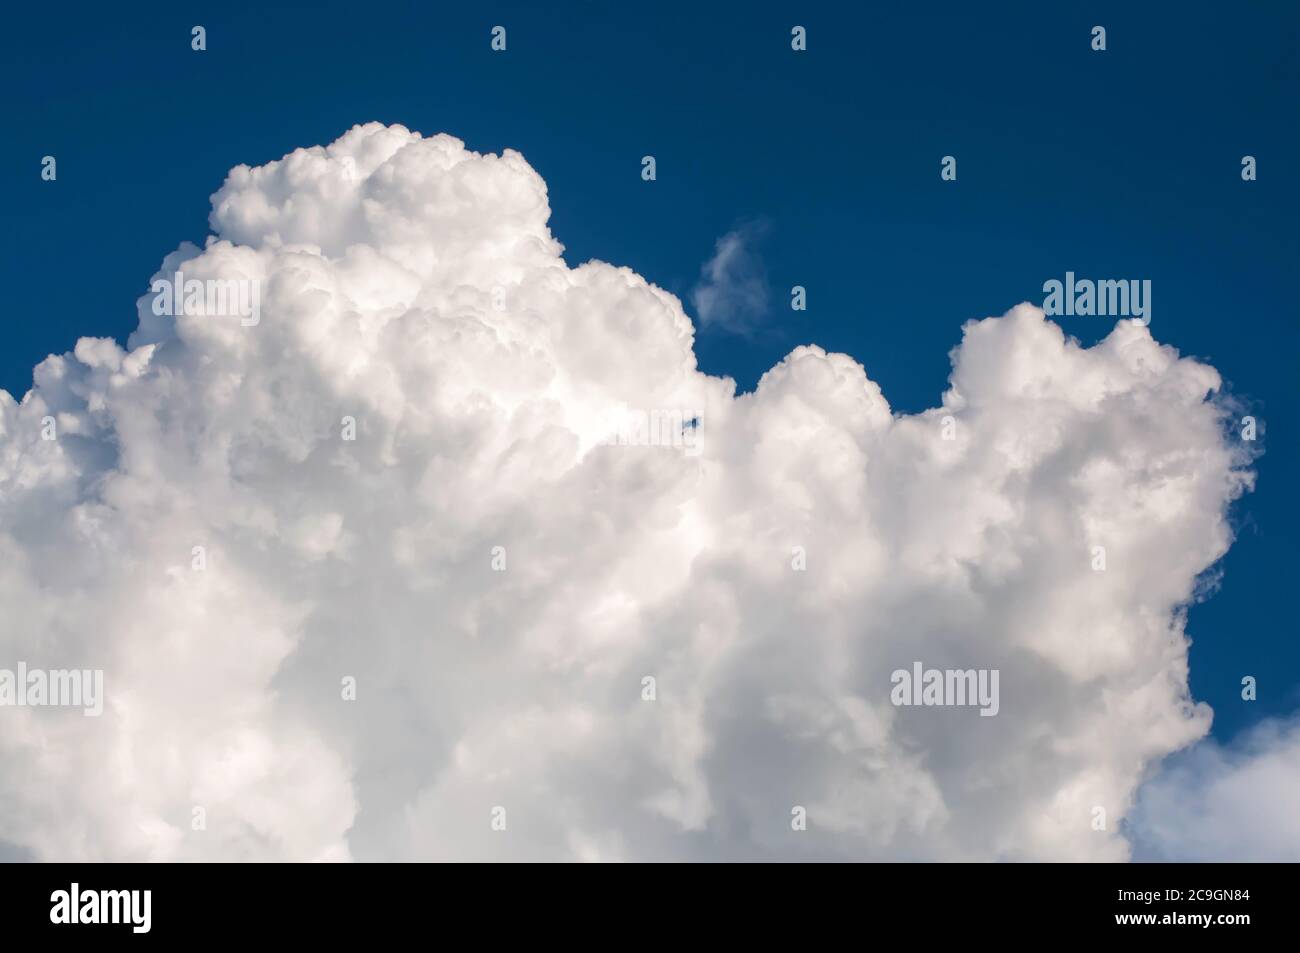 Nuage blanc bouffé sur ciel bleu, nuages de pluie massifs, nuage moelleux Cumulonimbus. Banque D'Images